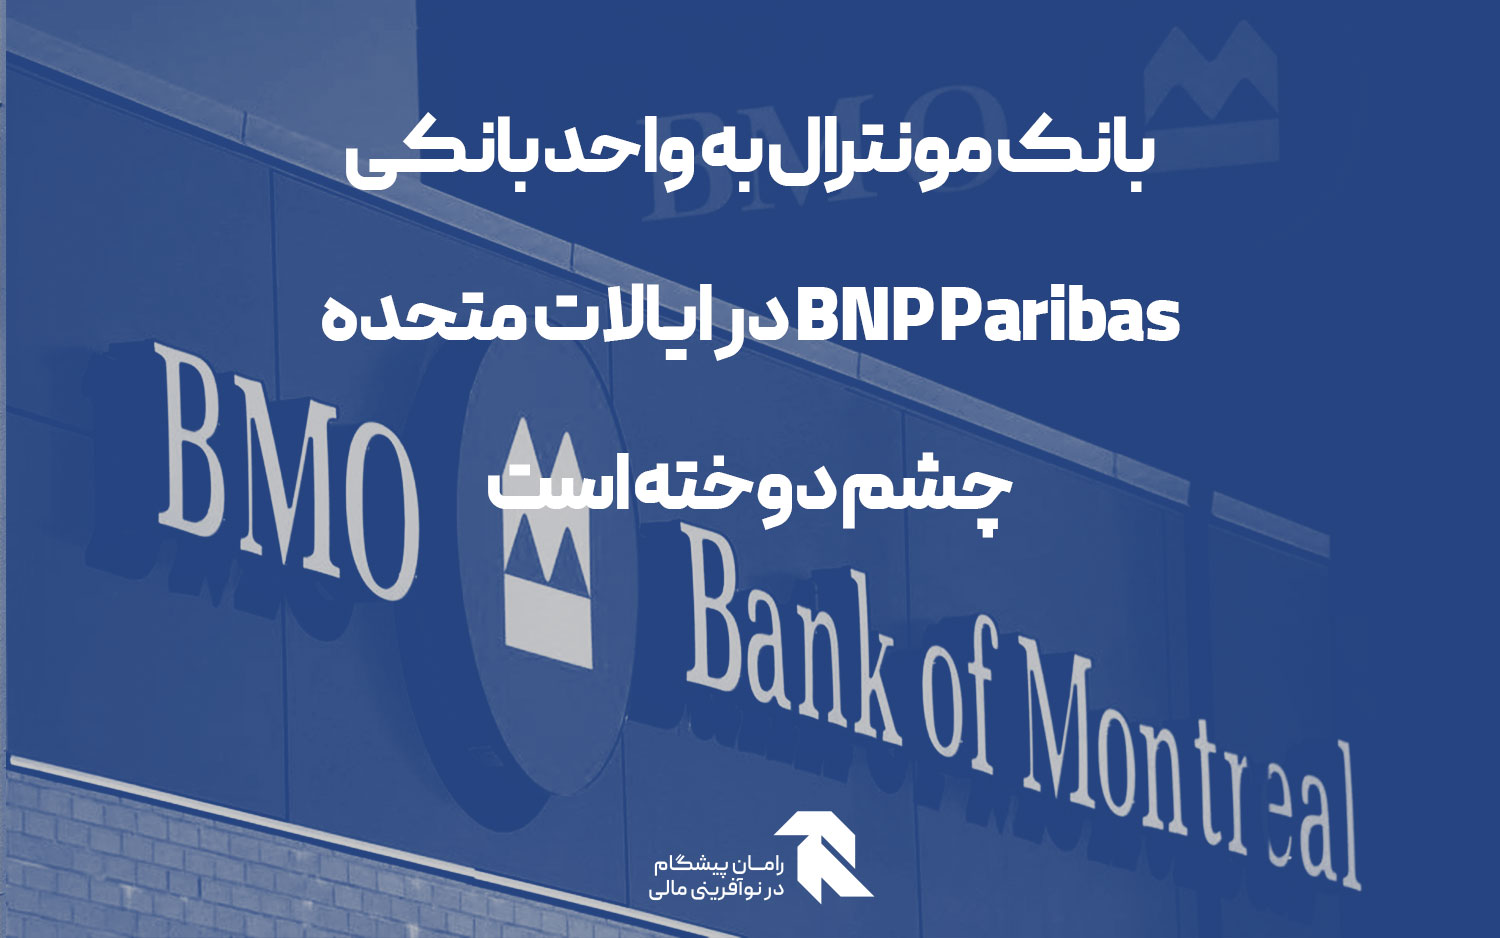 بانک مونترال به واحد بانکی BNP Paribas در ایالات متحده چشم دوخته است